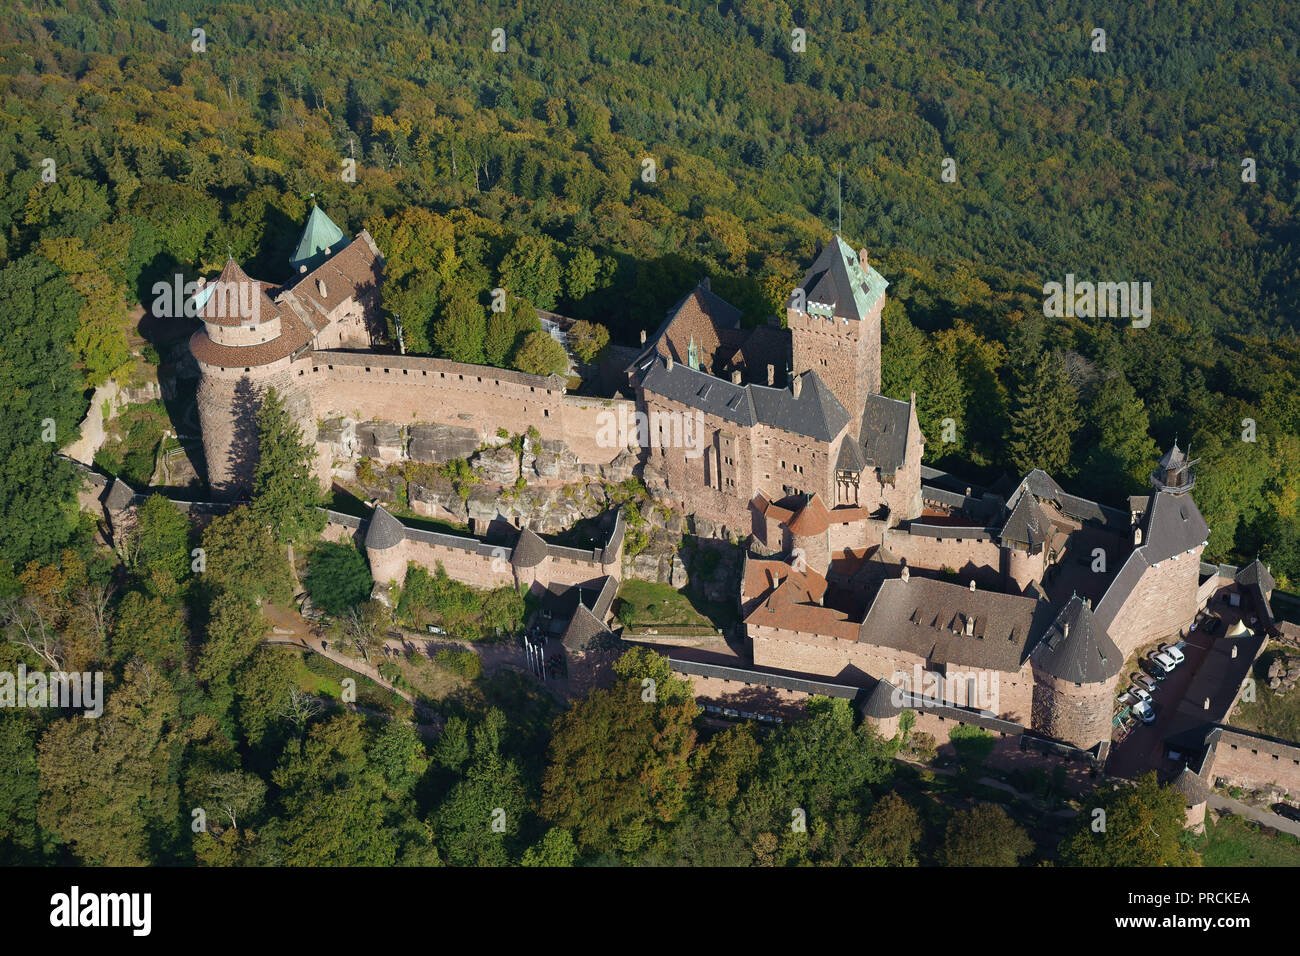 LUFTAUFNAHME. Rosa Sandstein mittelalterliche Burg auf einem bewaldeten Berggipfel. Burg Haut-Koenigsbourg, Orschwiller, Bas-Rhin, Elsass, Grand Est, Frankreich. Stockfoto